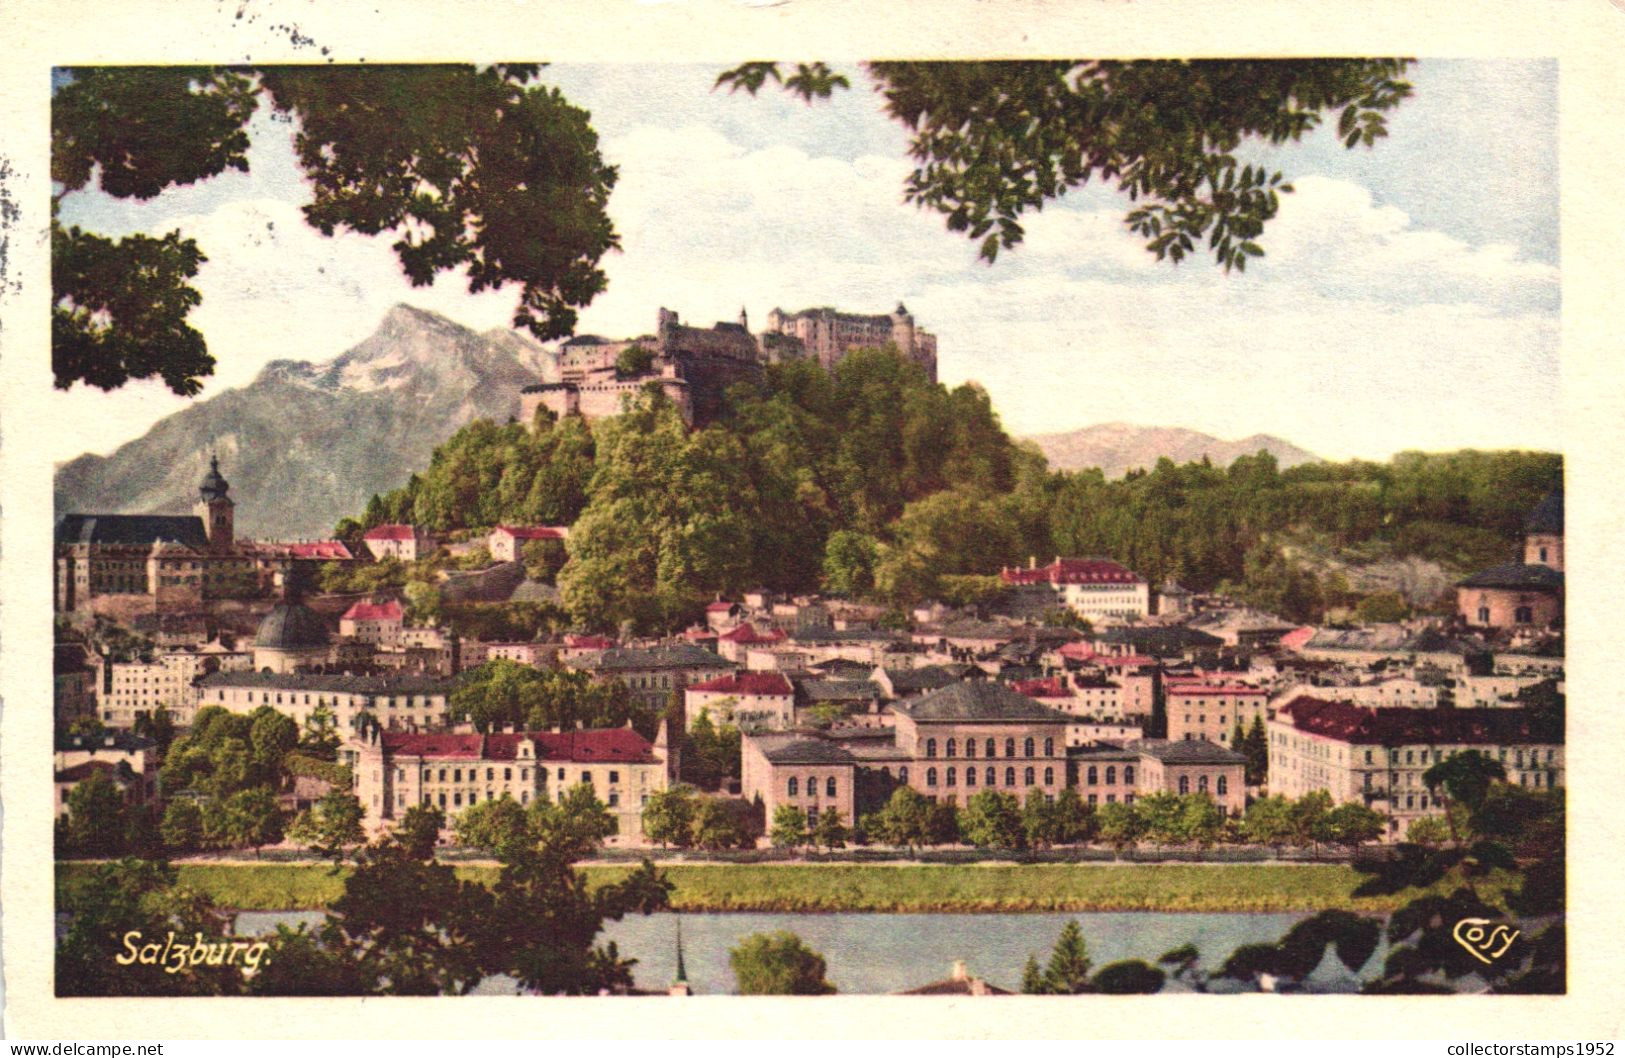 SALZBURG, ARCHITECTURE, CASTLE, MOUNTAIN, AUSTRIA, POSTCARD - Salzburg Stadt